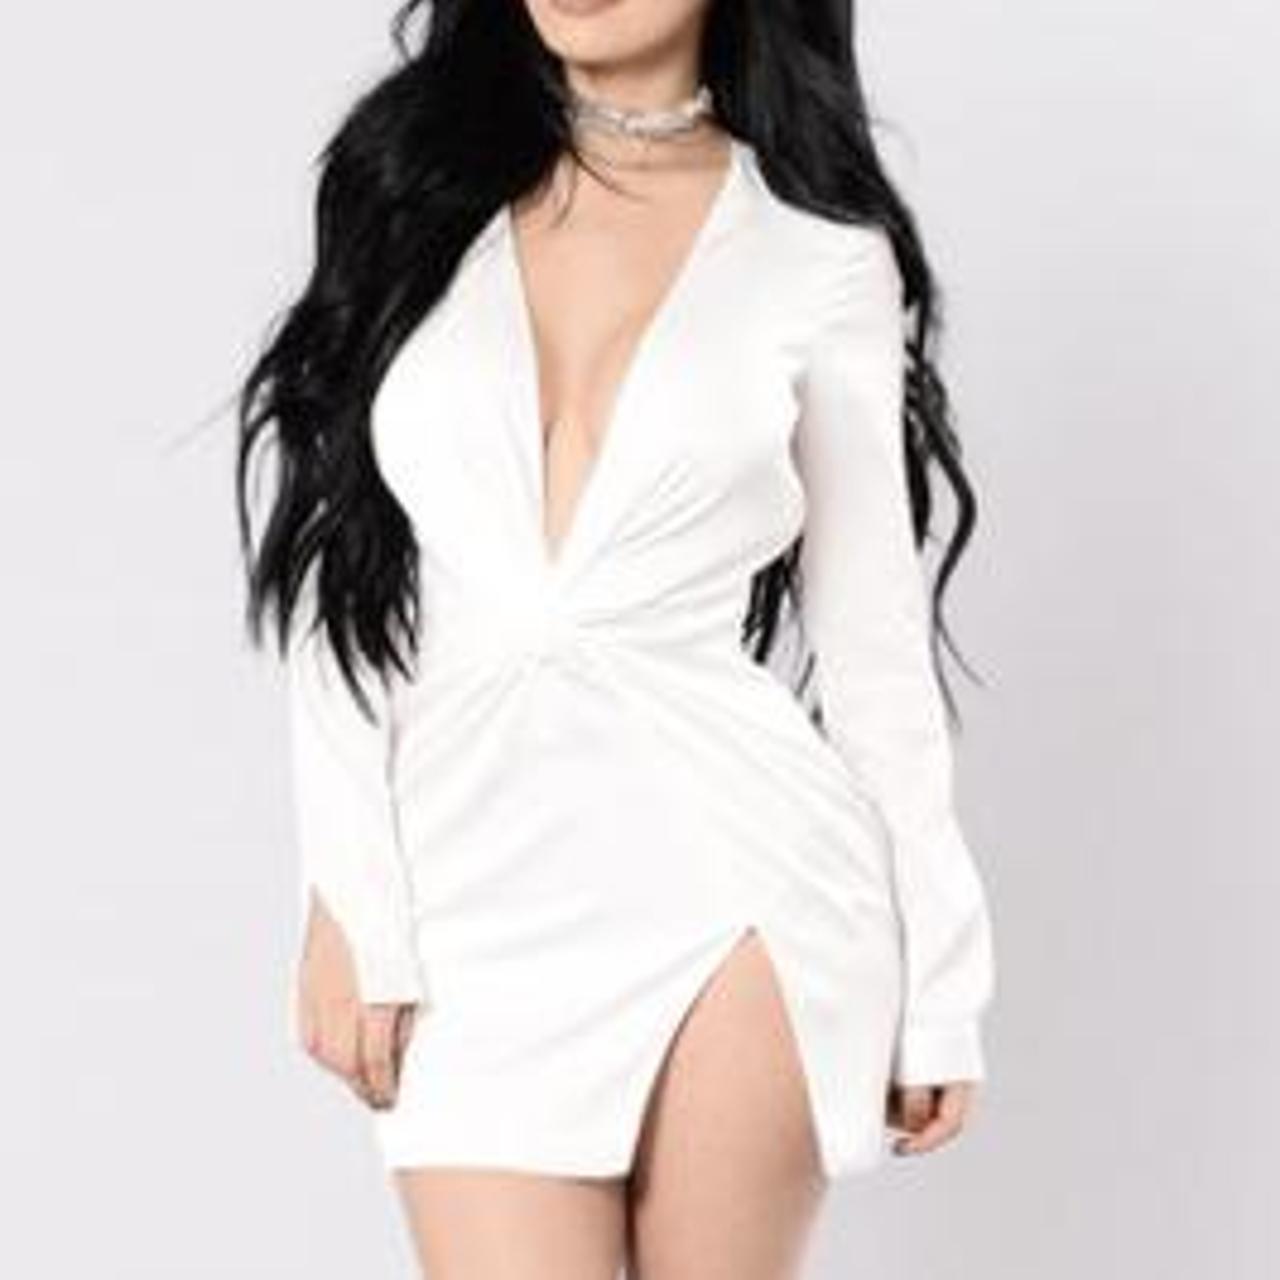 Fashion Nova Women's White Dress (2)